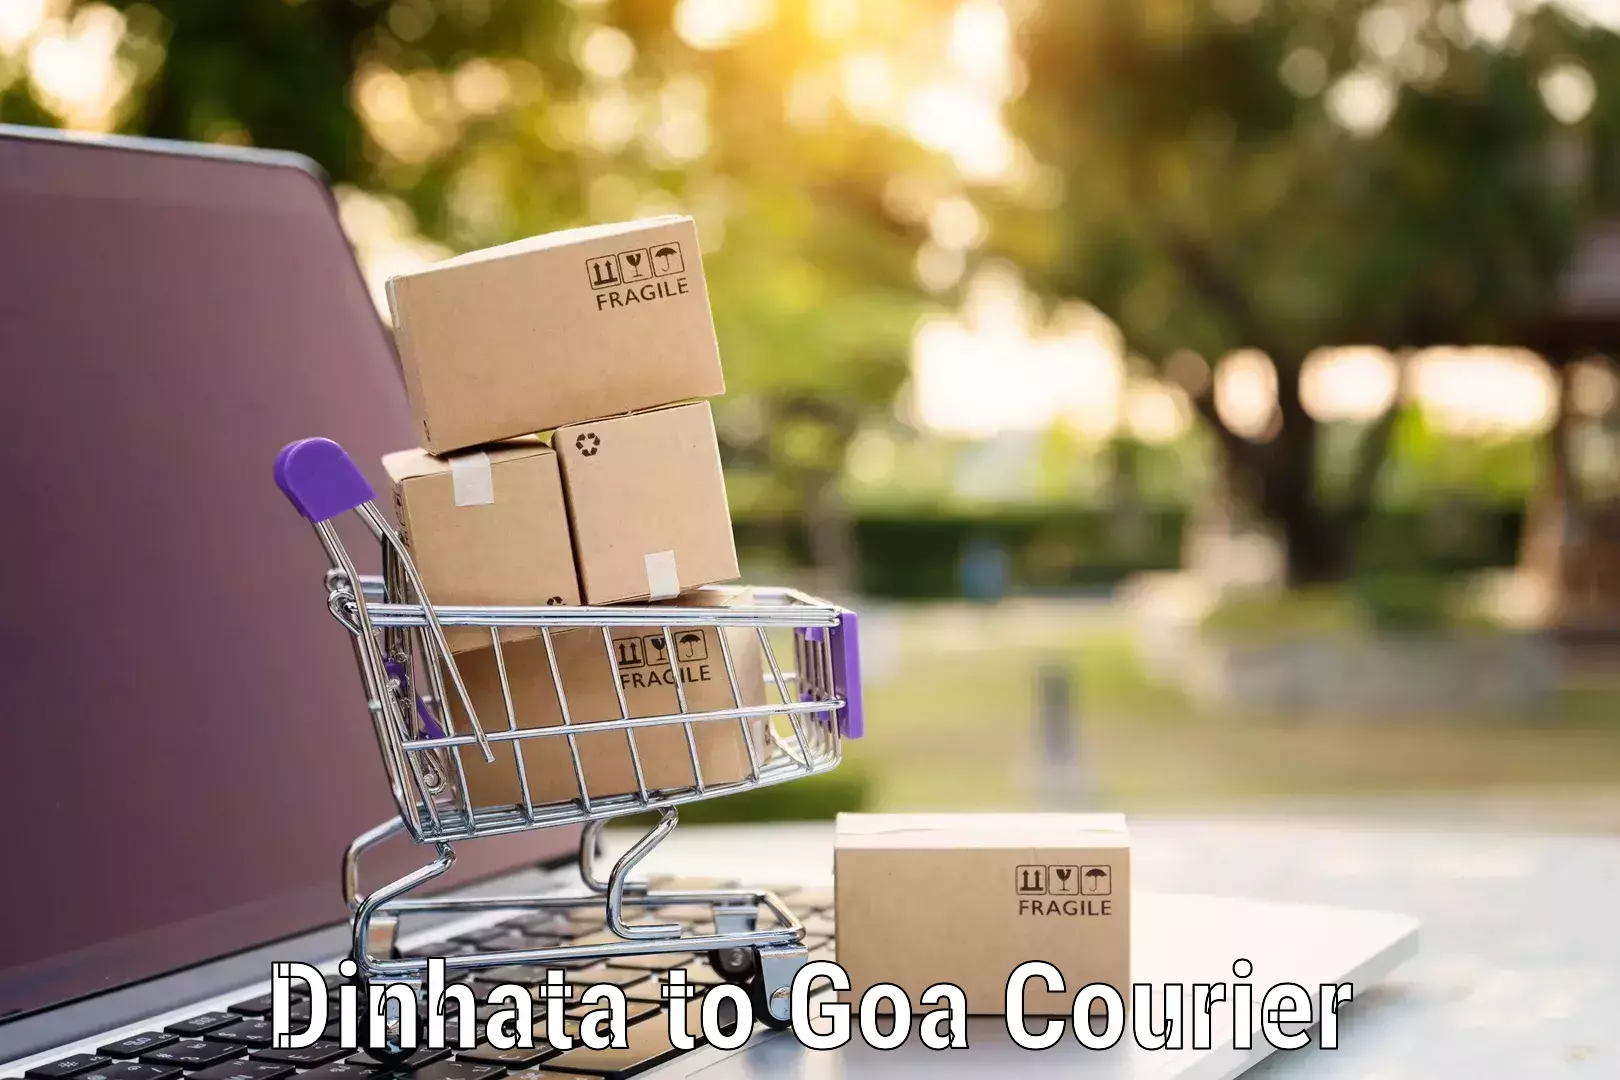 Home relocation experts Dinhata to Goa